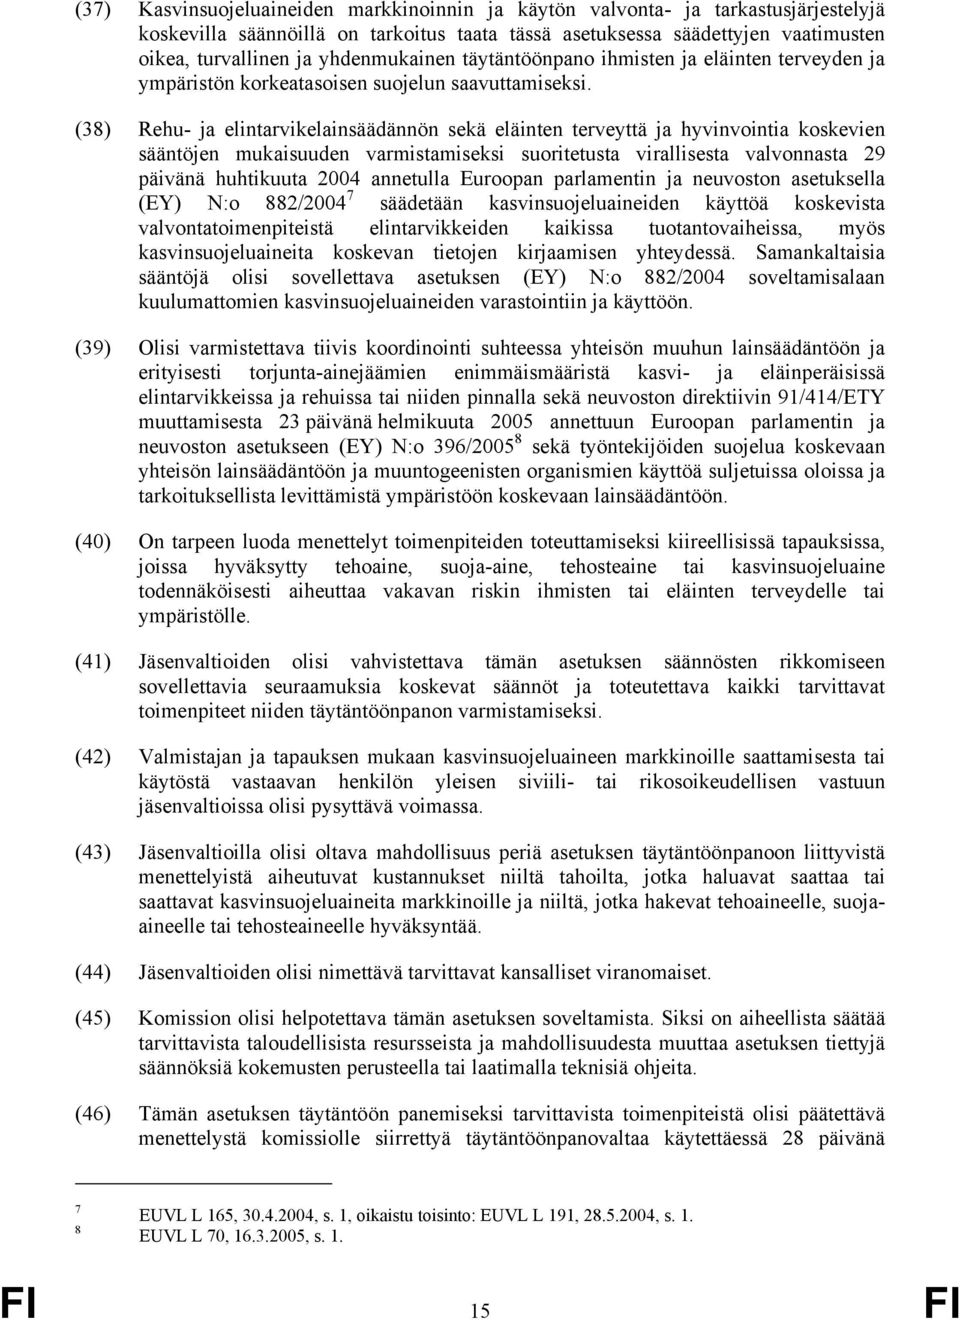 (38) Rehu- ja elintarvikelainsäädännön sekä eläinten terveyttä ja hyvinvointia koskevien sääntöjen mukaisuuden varmistamiseksi suoritetusta virallisesta valvonnasta 29 päivänä huhtikuuta 2004